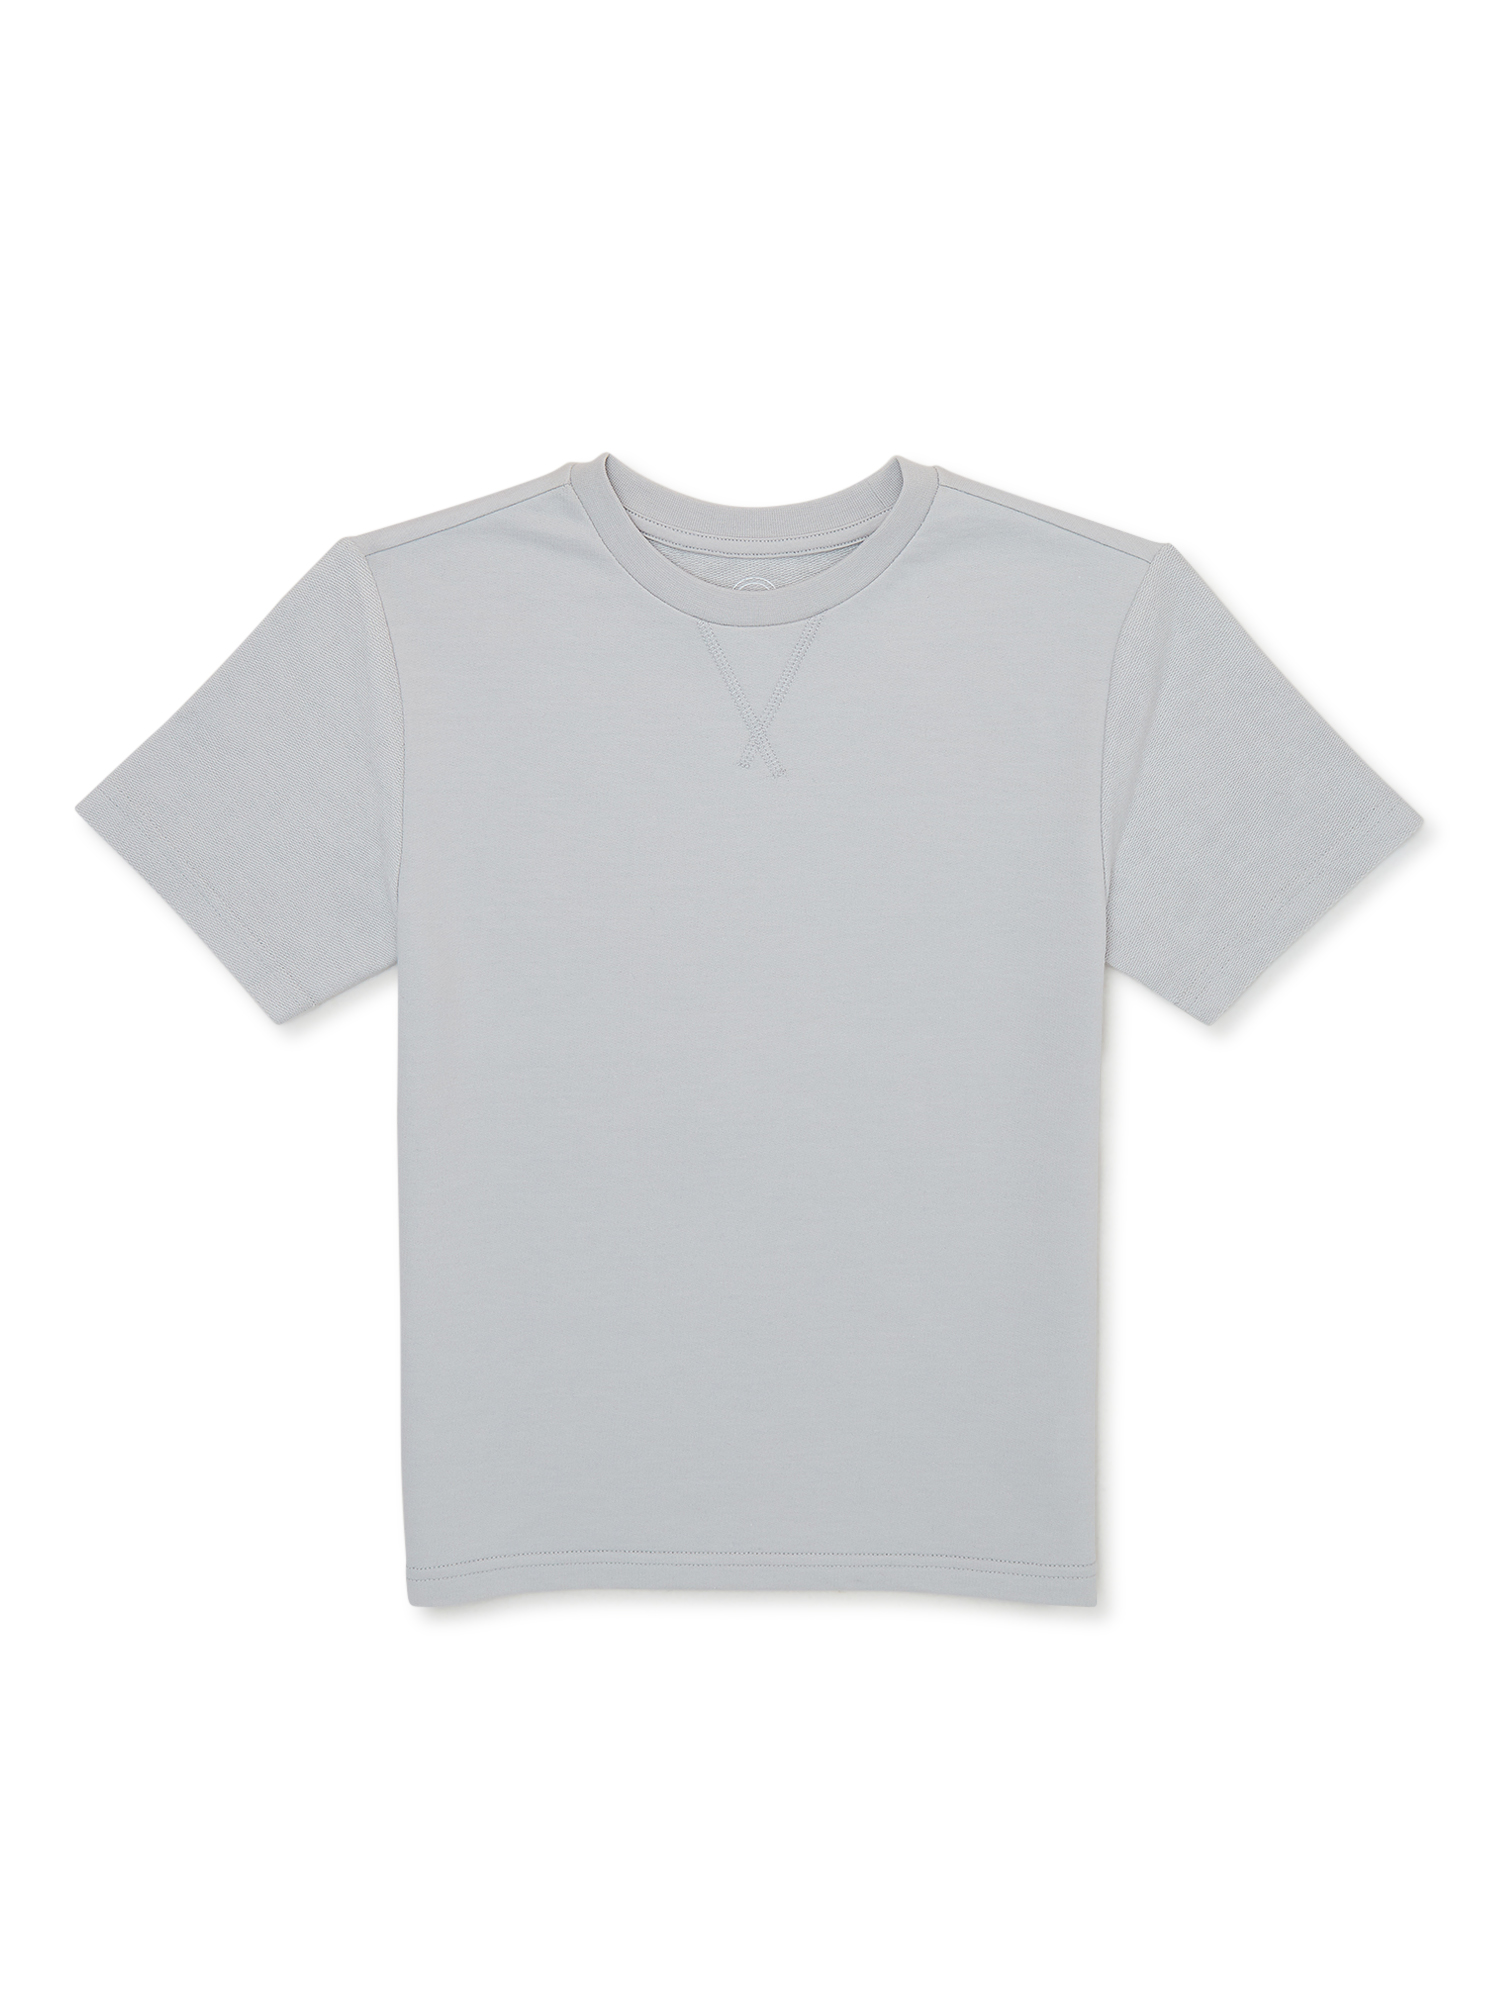 Wonder Nation Boys Short Sleeve Textured T-Shirt, Sizes 4-18 - image 1 of 3